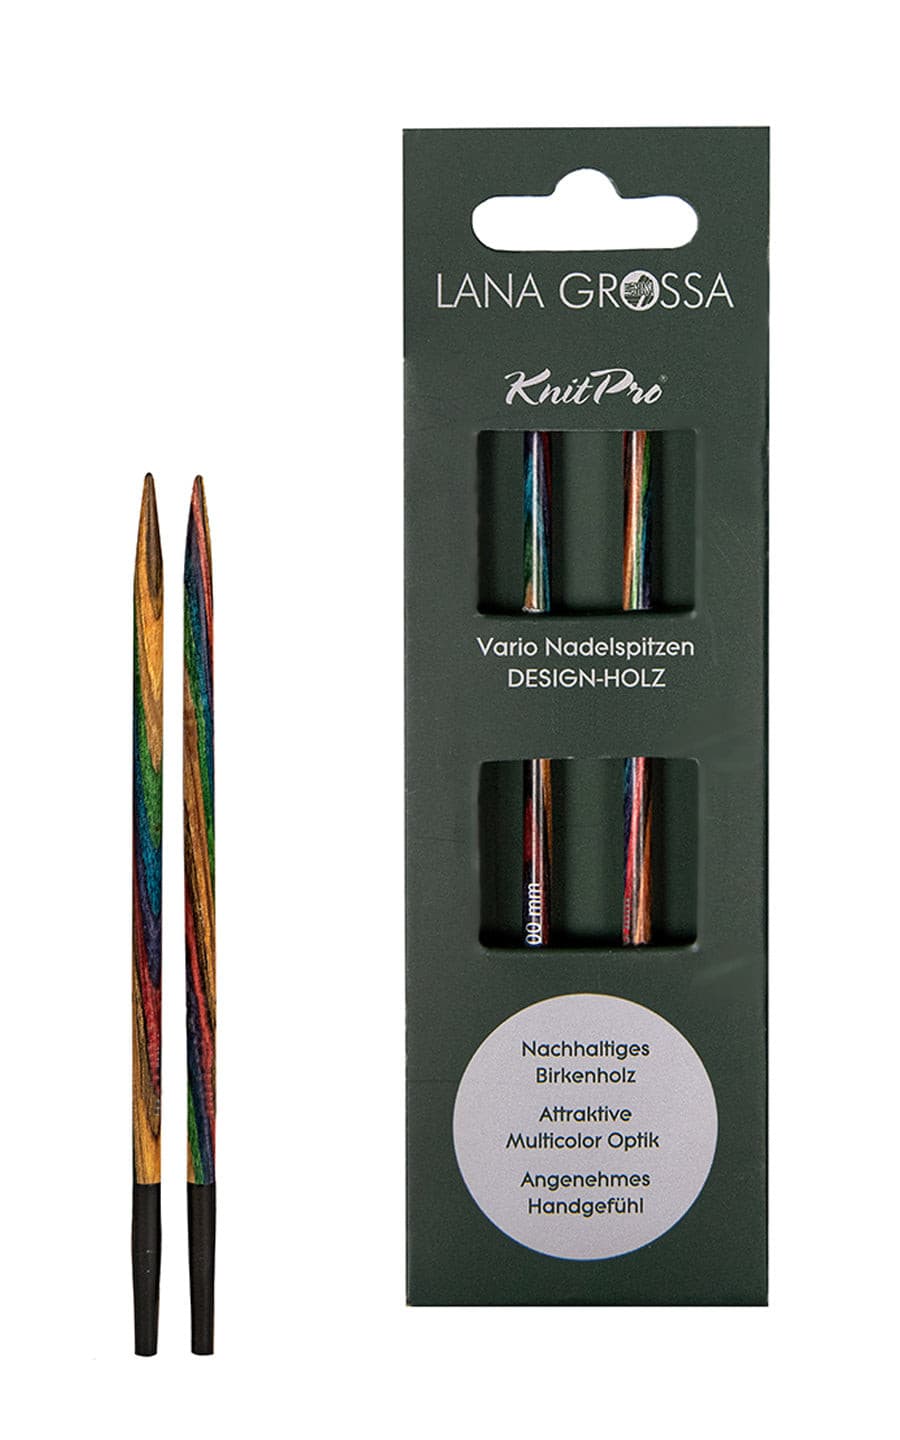 3,5 mm Nadelspitze Vario aus Holz - neue Verpackung von LANA GROSSA jetzt online kaufen bei OONIQUE